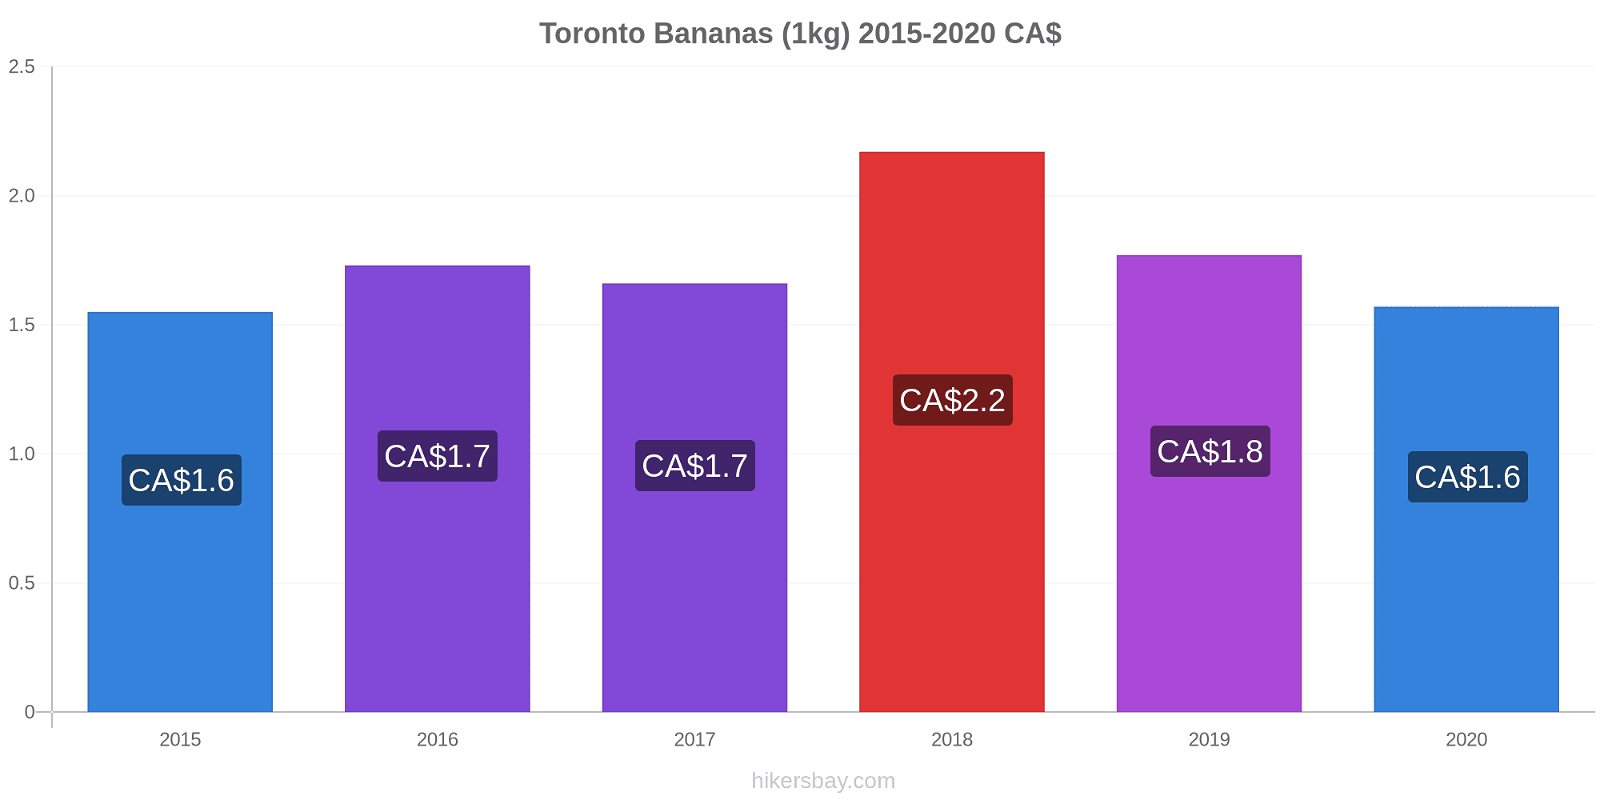 Toronto variação de preço Banana (1kg) hikersbay.com